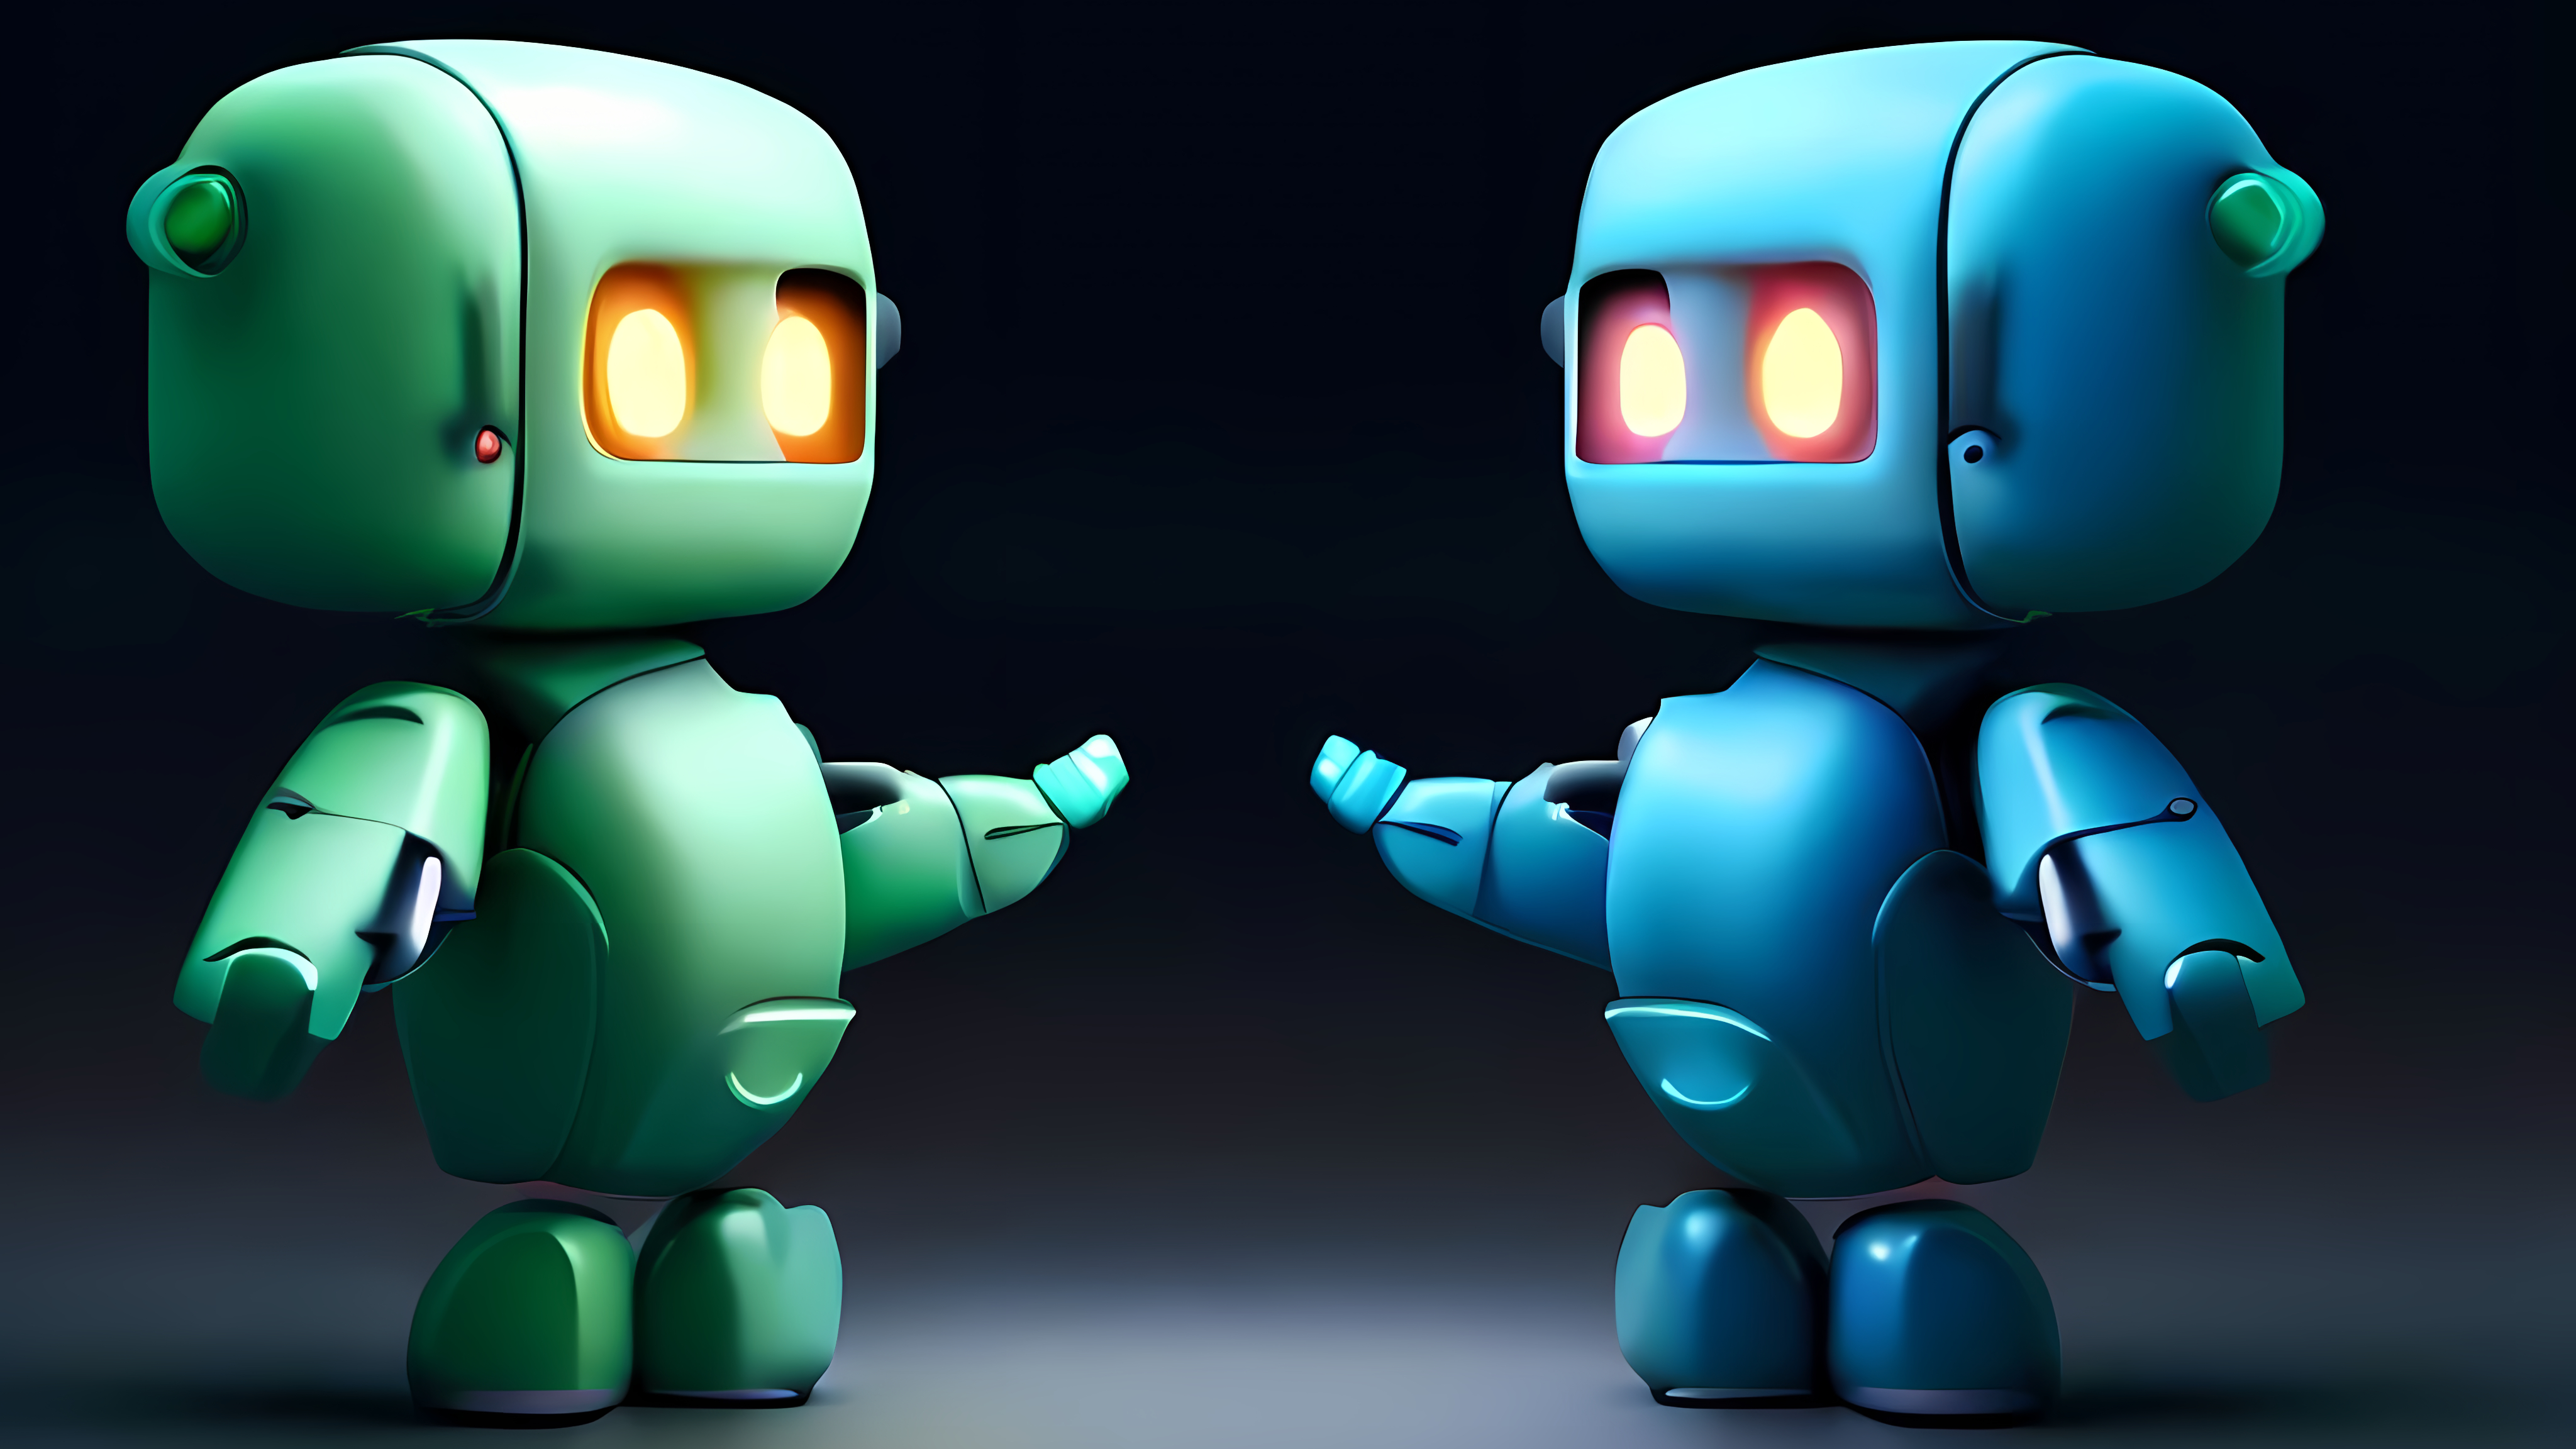 Zwei einander gegenüberstehende Roboter, einer repräsentiert ChatGPT, der andere Bing Chat